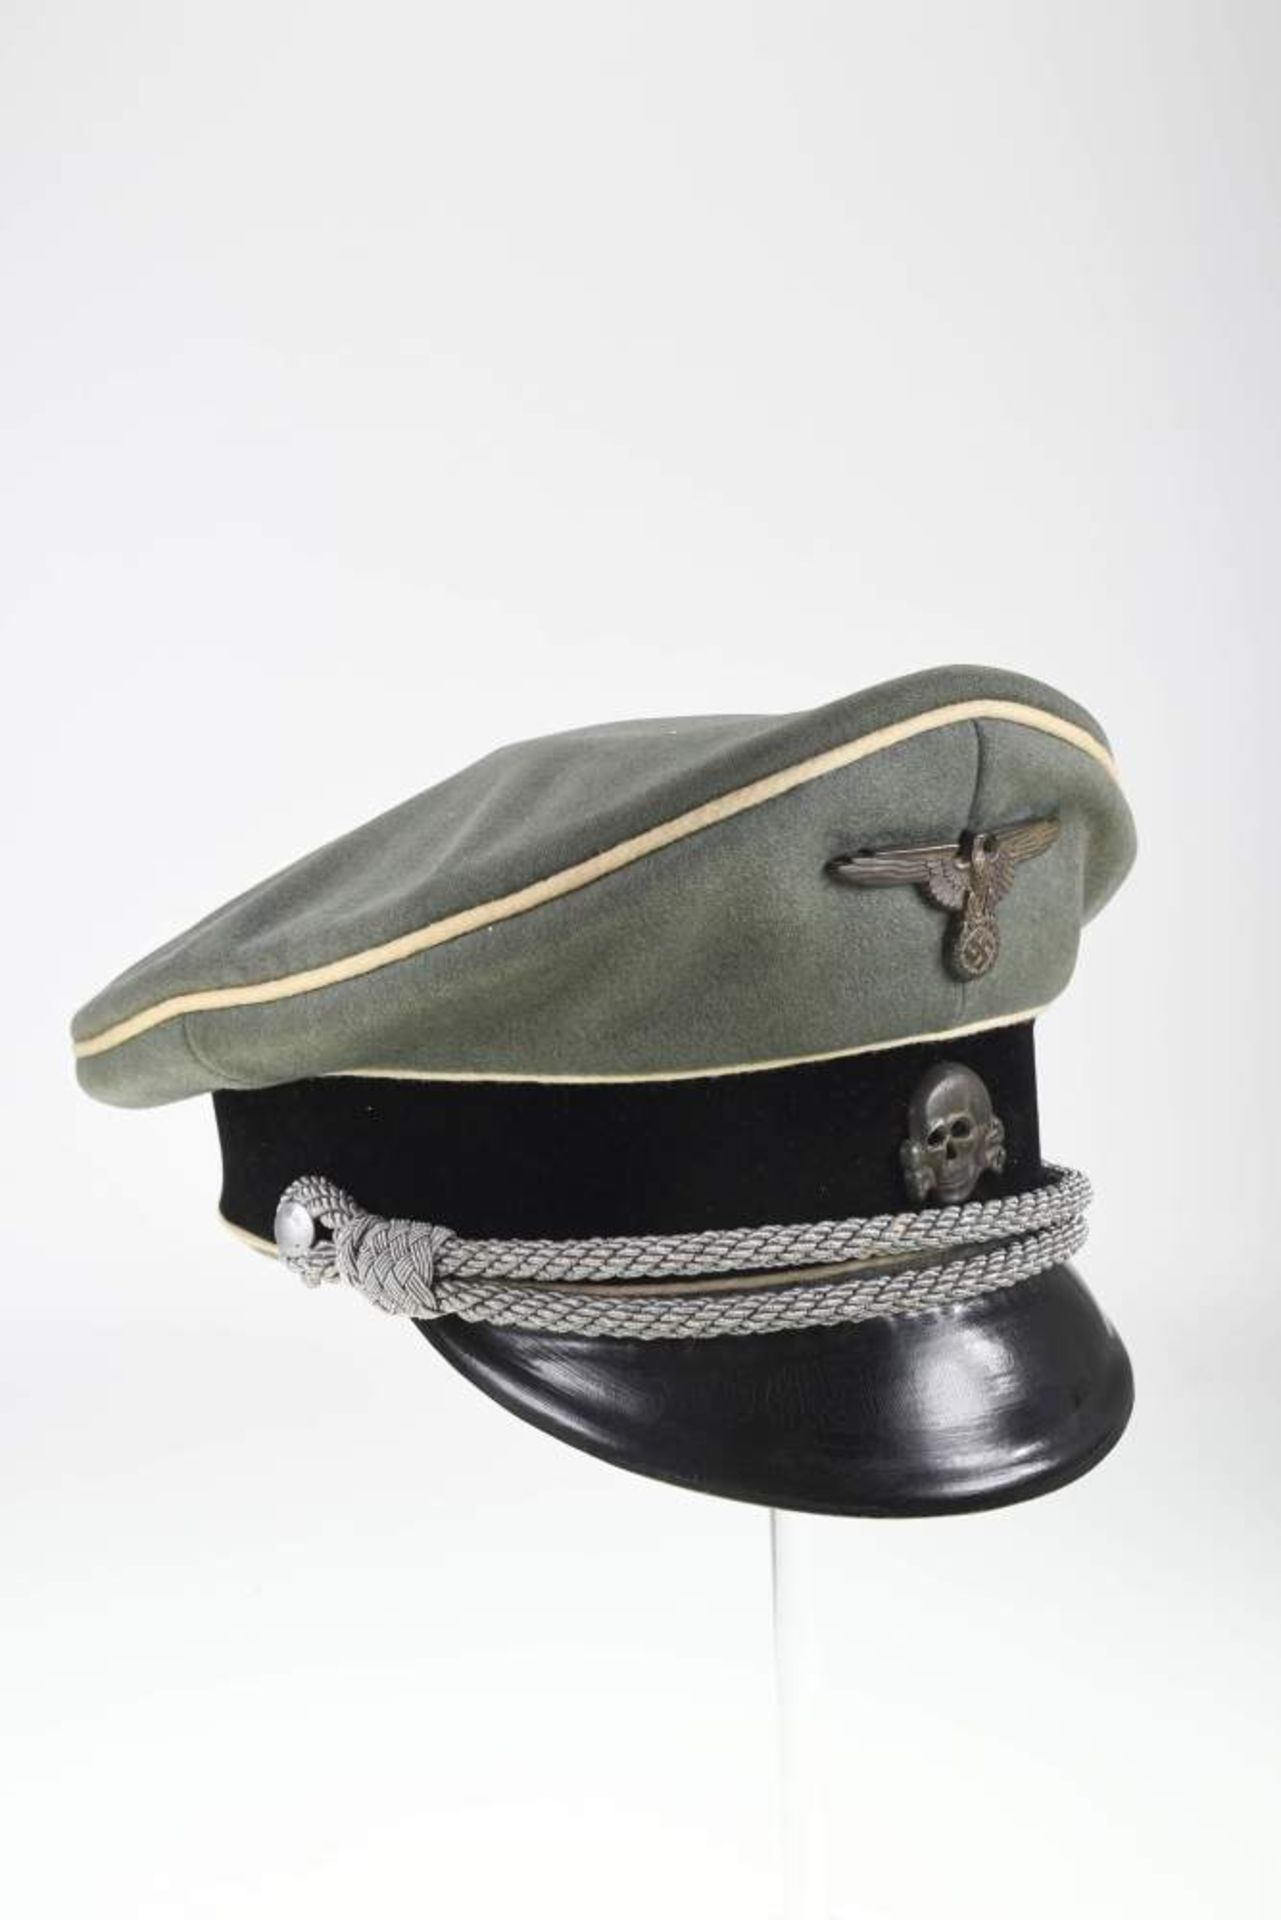 Waffen SS, Schirmmütze für Führer, feldgraues feines Tuch, mit schwarzem Samtbesatzstreifen und - Bild 4 aus 4